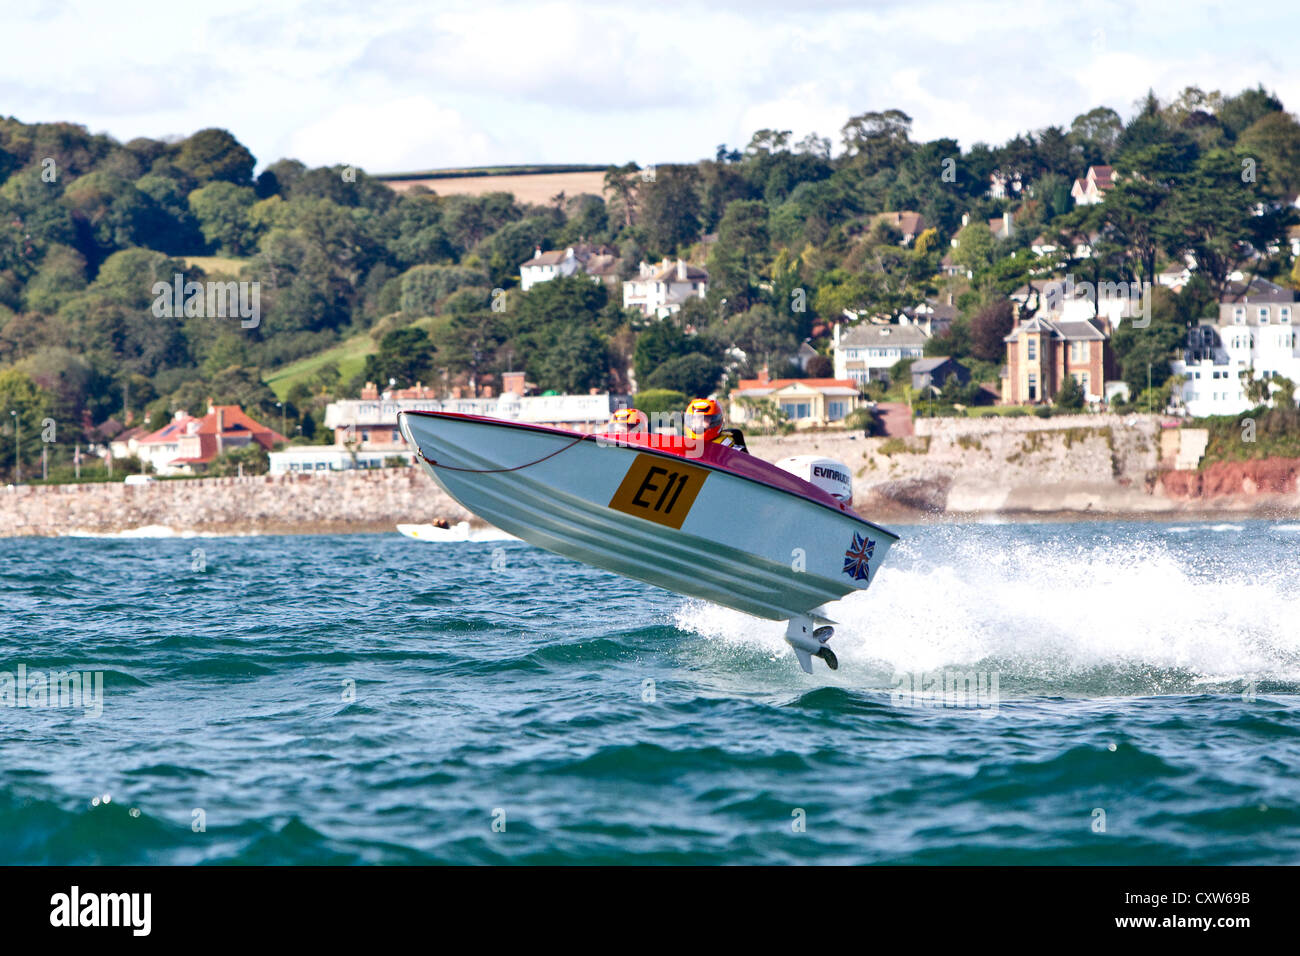 OCR Class Powerboat Racing at Torquay England, UK Stock Photo